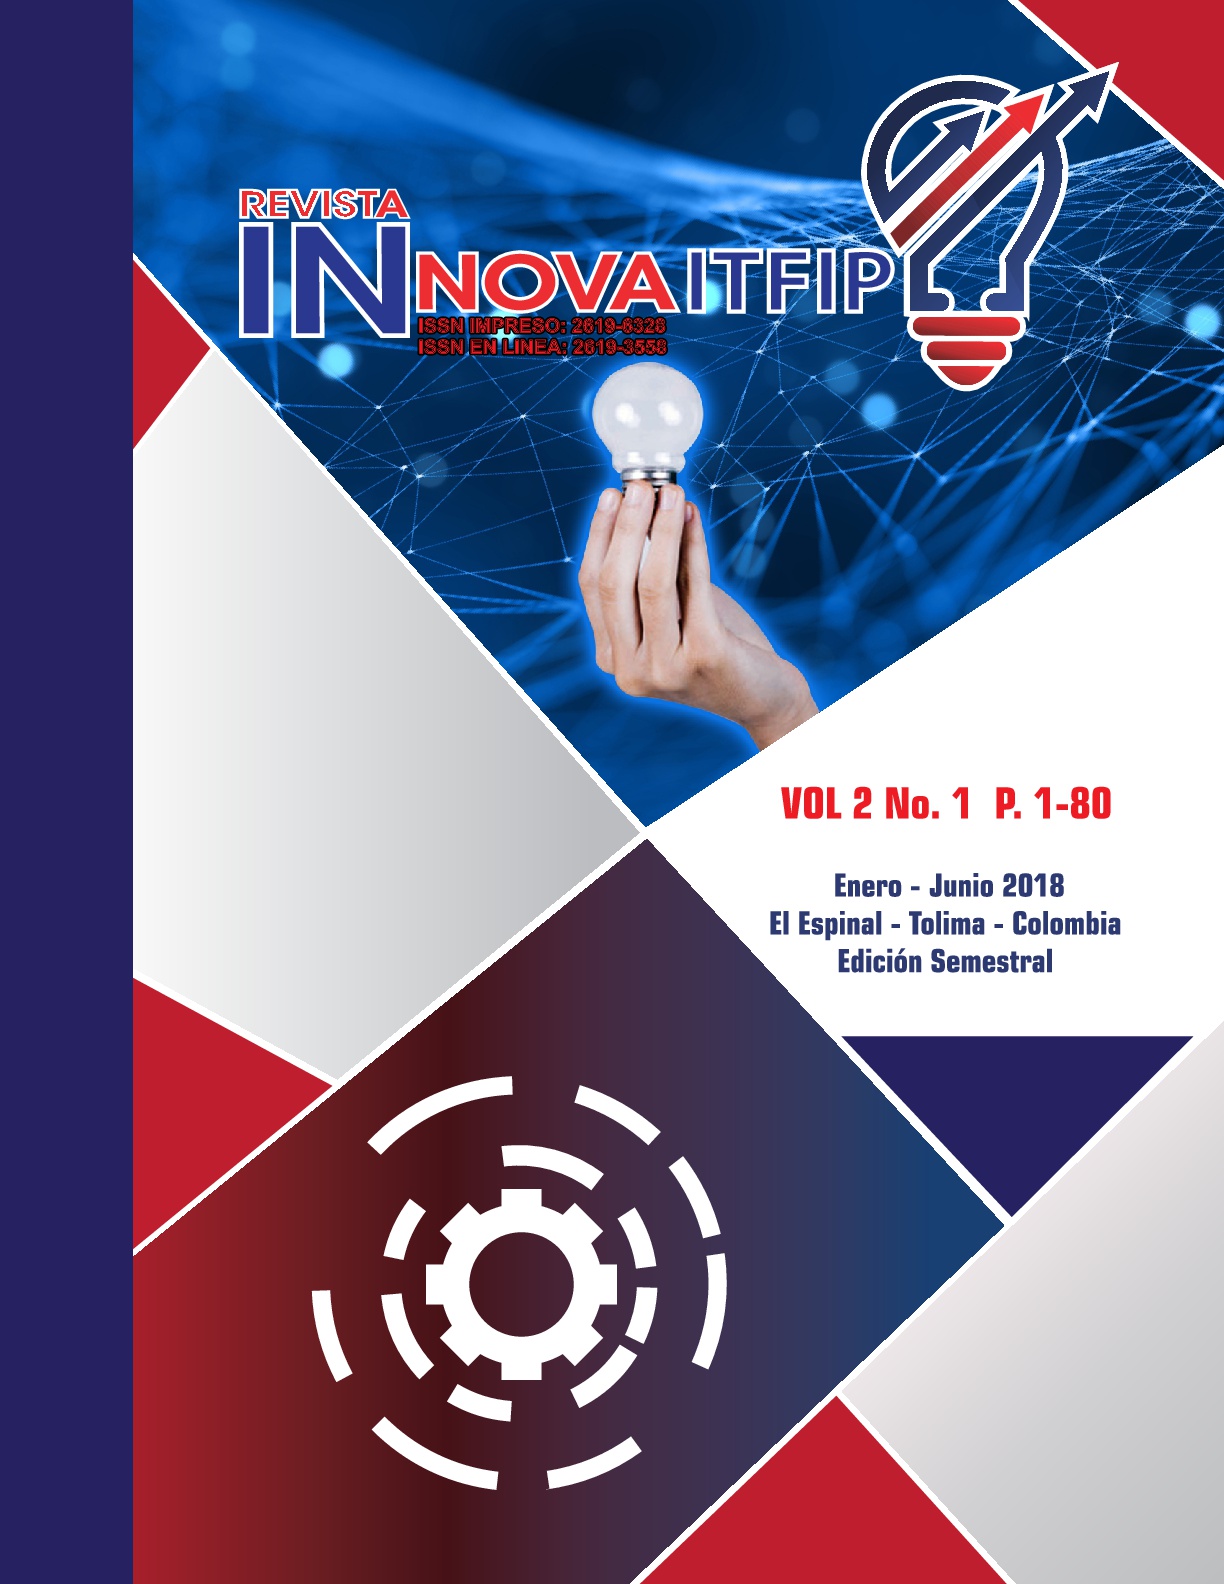                         Ver Vol. 2 Núm. 1 (2018): Revista Innova ITFIP
                    